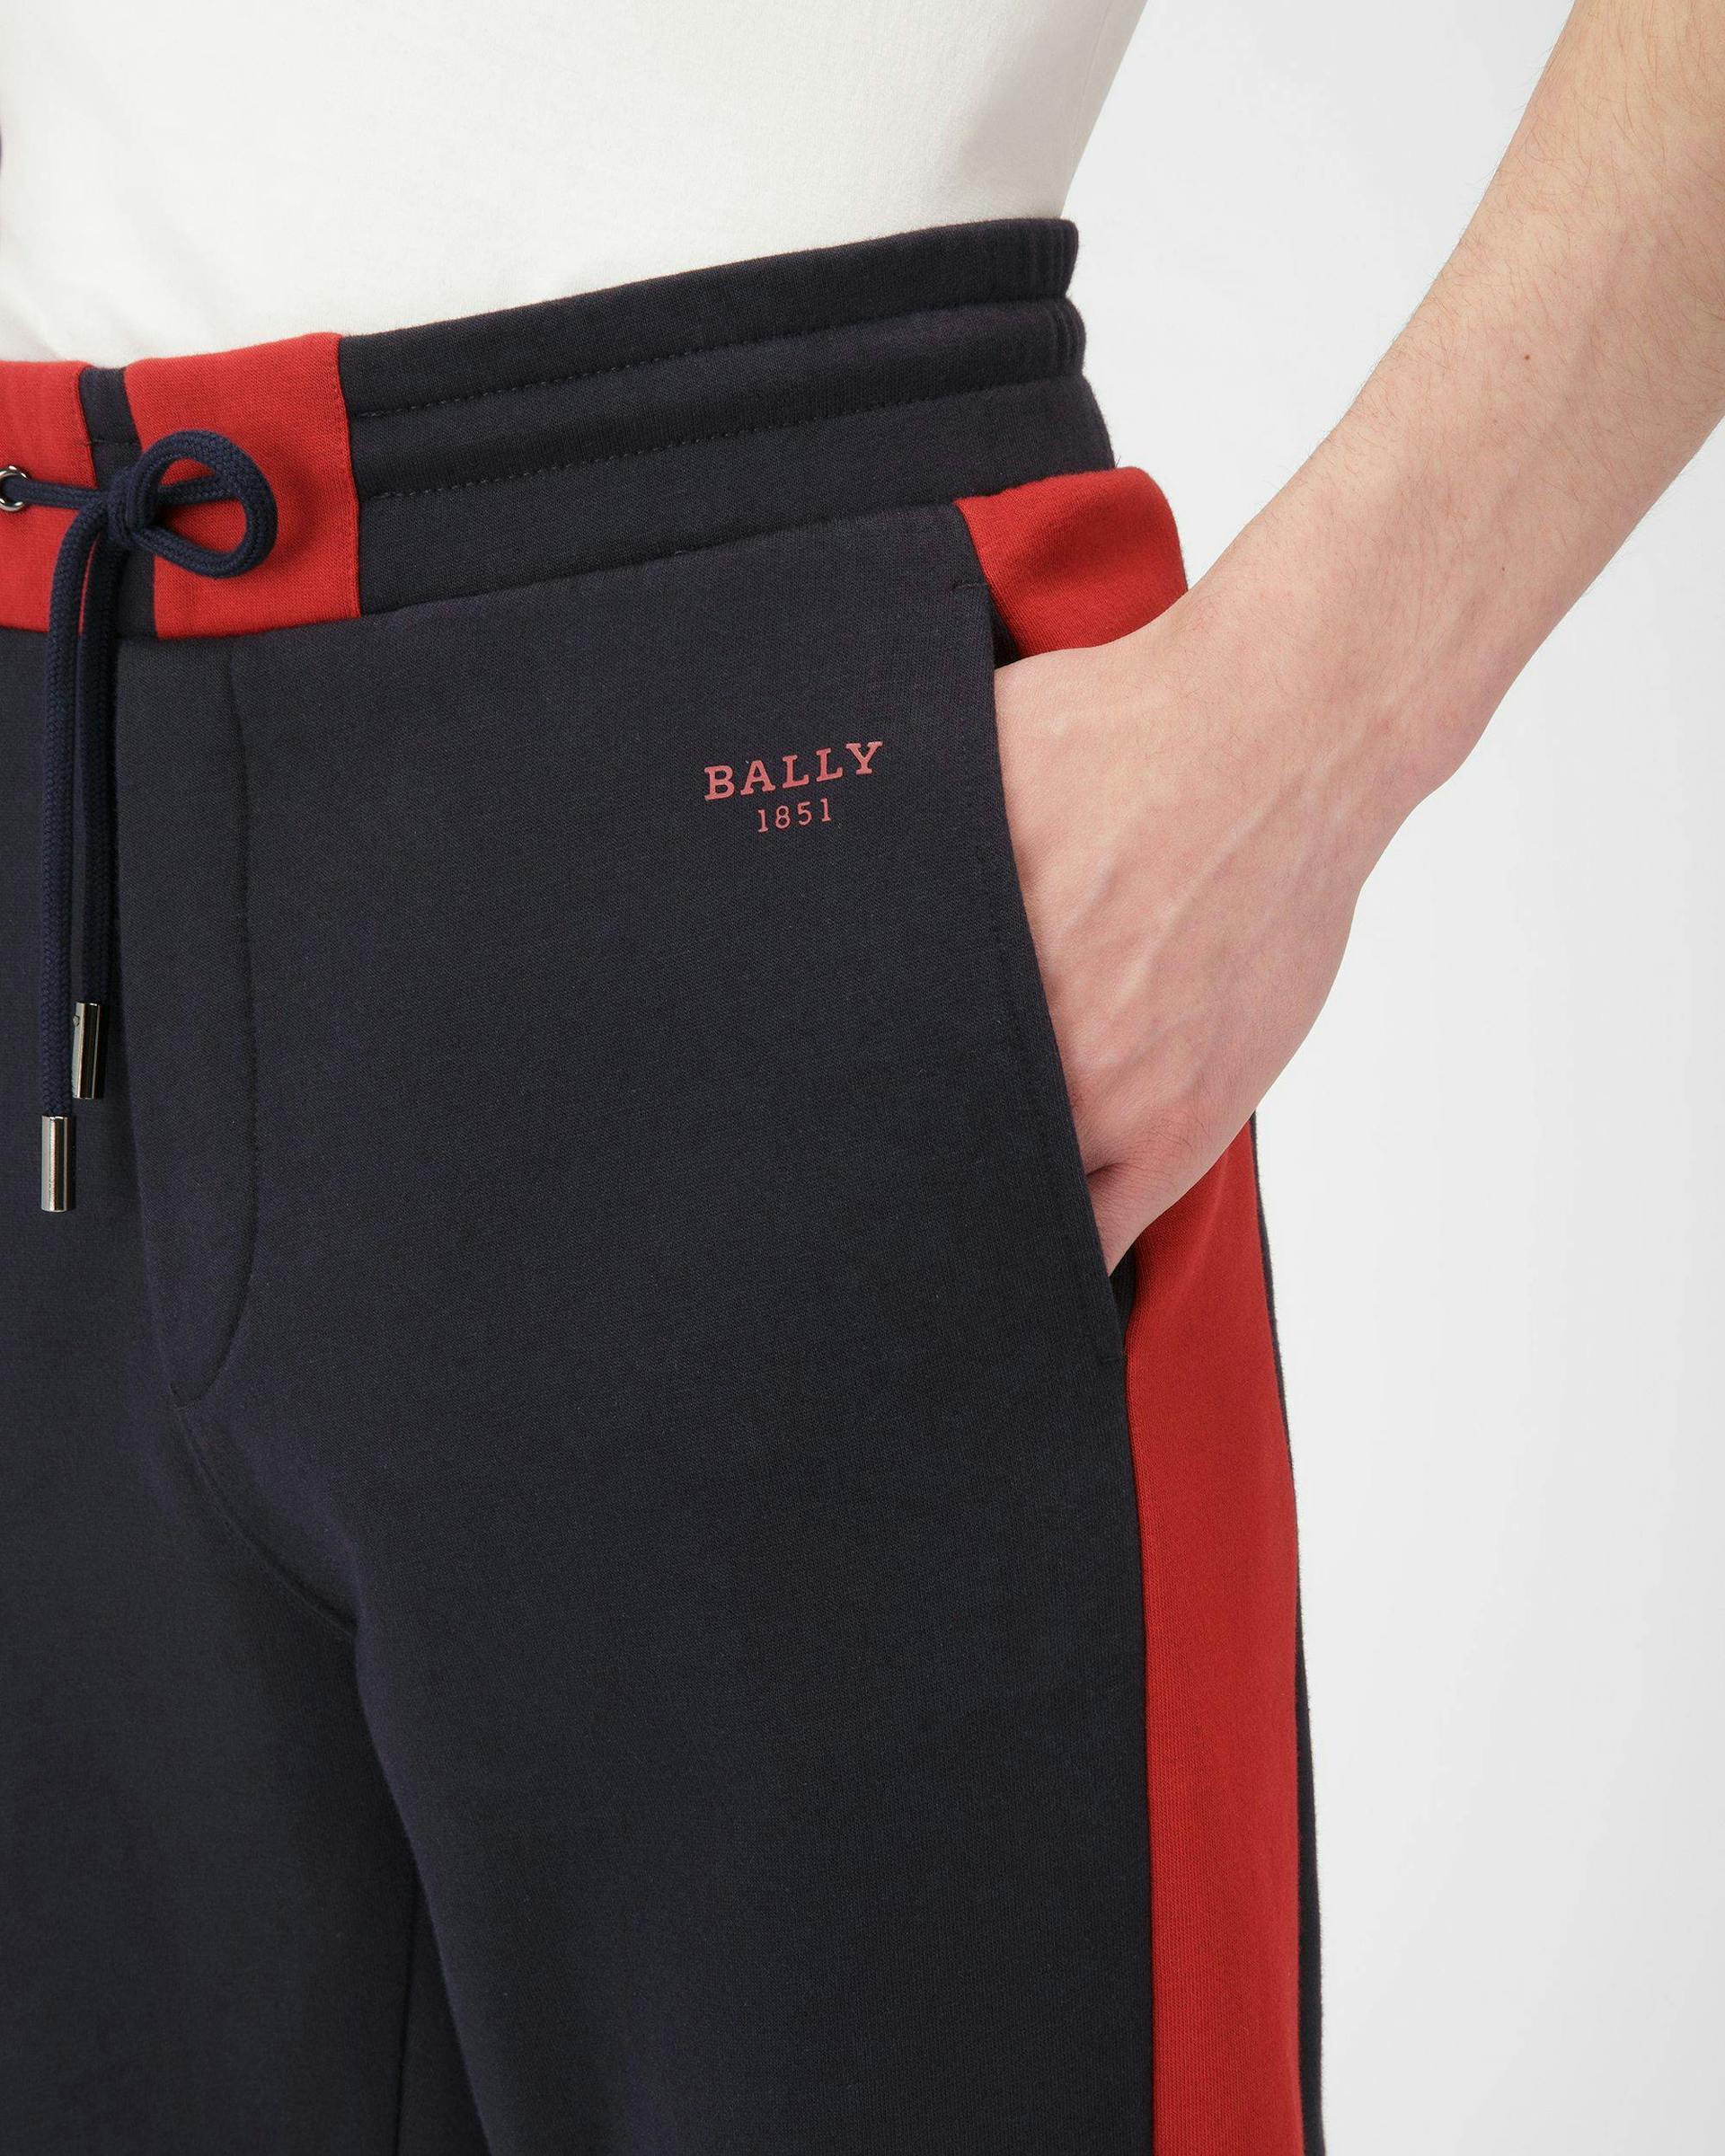 Righe A Contrasto Pantalone Tuta In Cotone Blu Navy E Rosso Bally - Uomo - Bally - 04